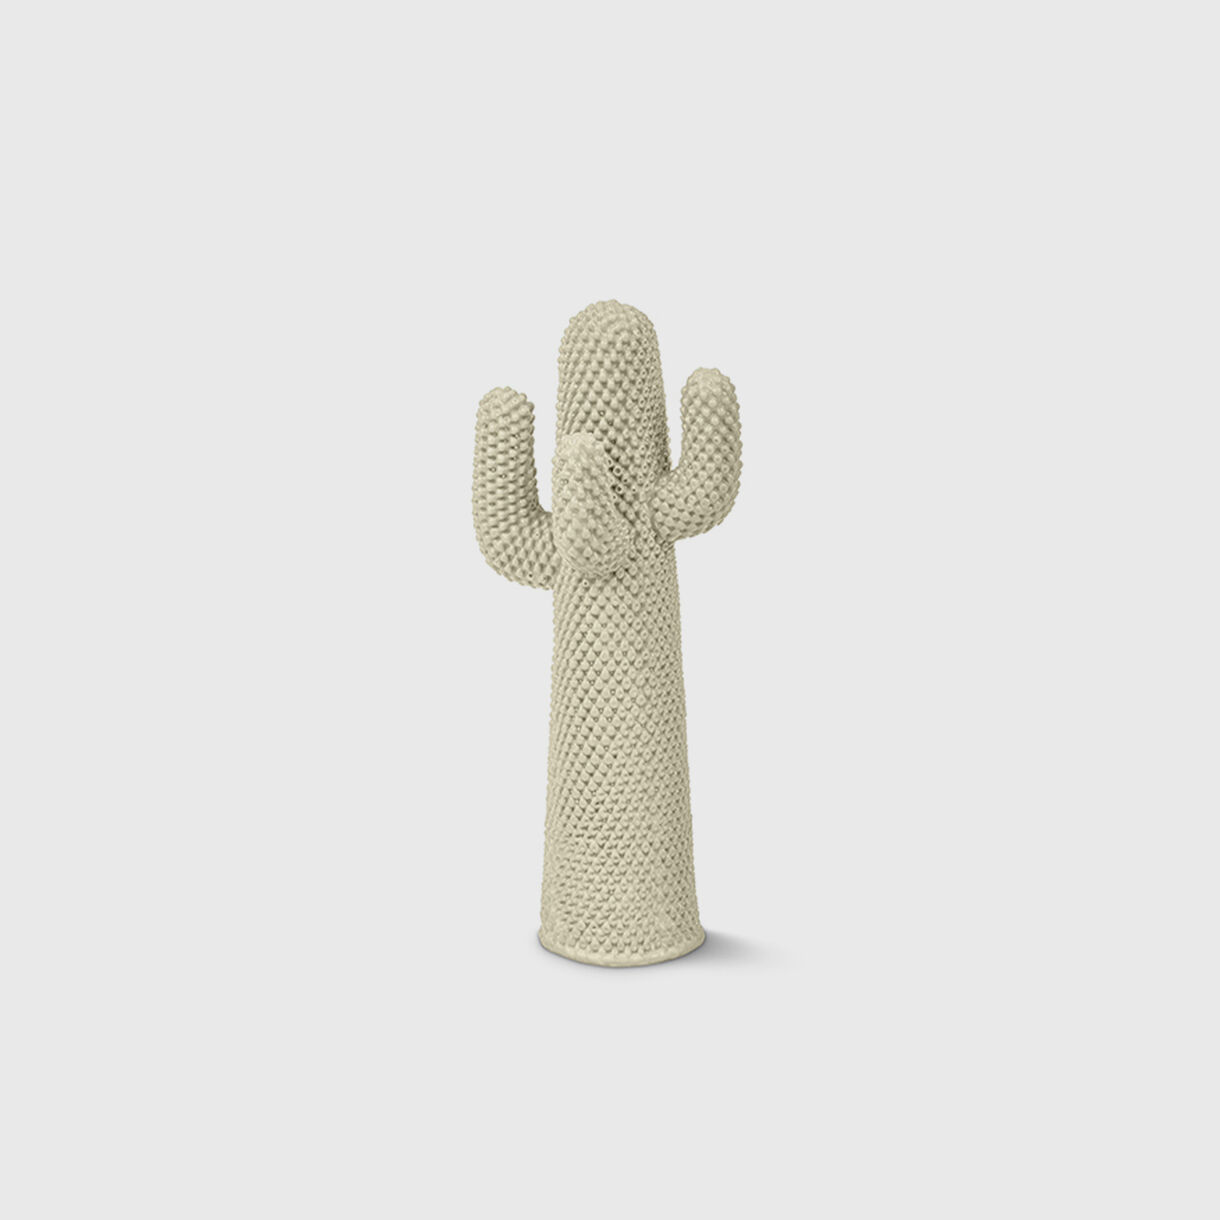 Guframini Cactus, Another White